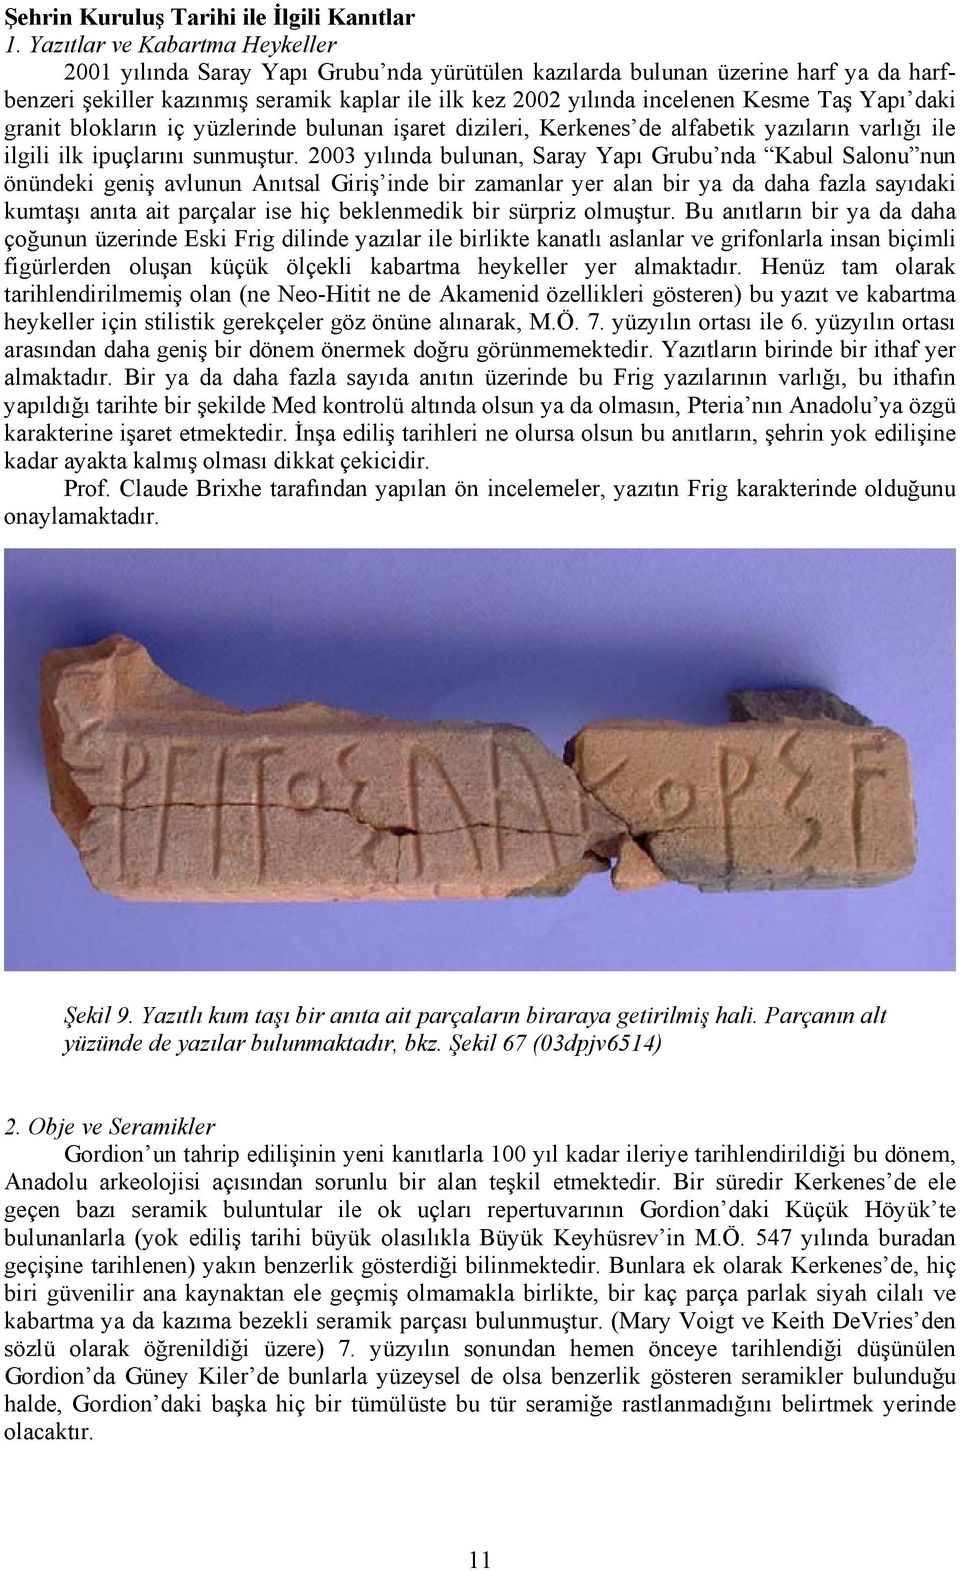 Taş Yapı daki granit blokların iç yüzlerinde bulunan işaret dizileri, Kerkenes de alfabetik yazıların varlığı ile ilgili ilk ipuçlarını sunmuştur.